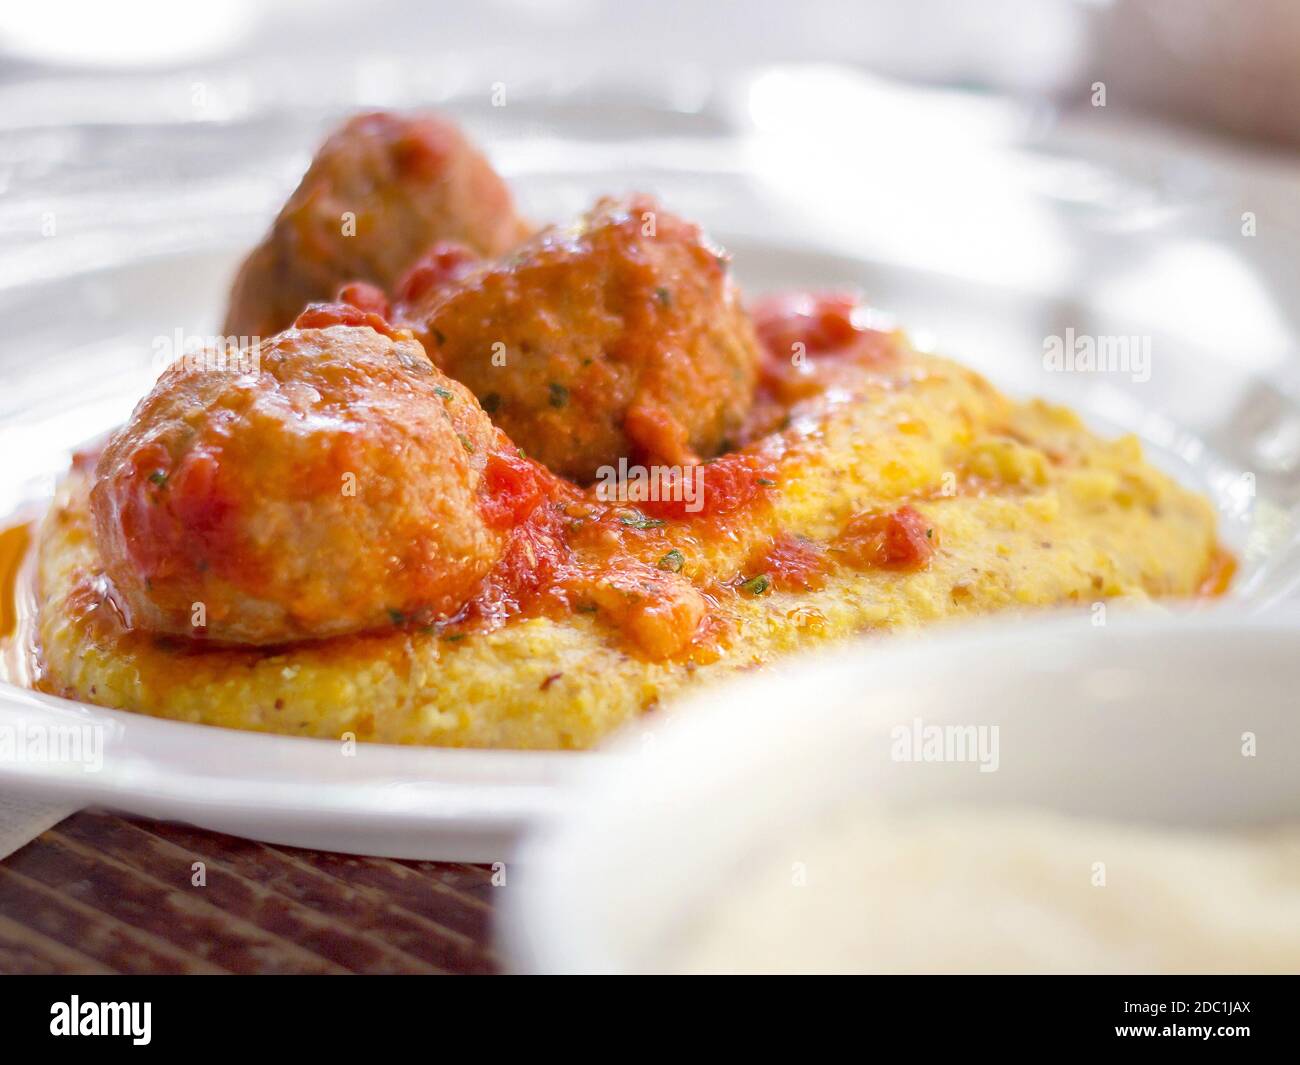 Polenta avec boulettes de viande dans la sauce tomate. Boulettes de viande de porc et de bœuf italiennes traditionnelles servies sur de la polenta avec une sauce tomate, du basilic, du parmesan et un filet d'argoule Banque D'Images